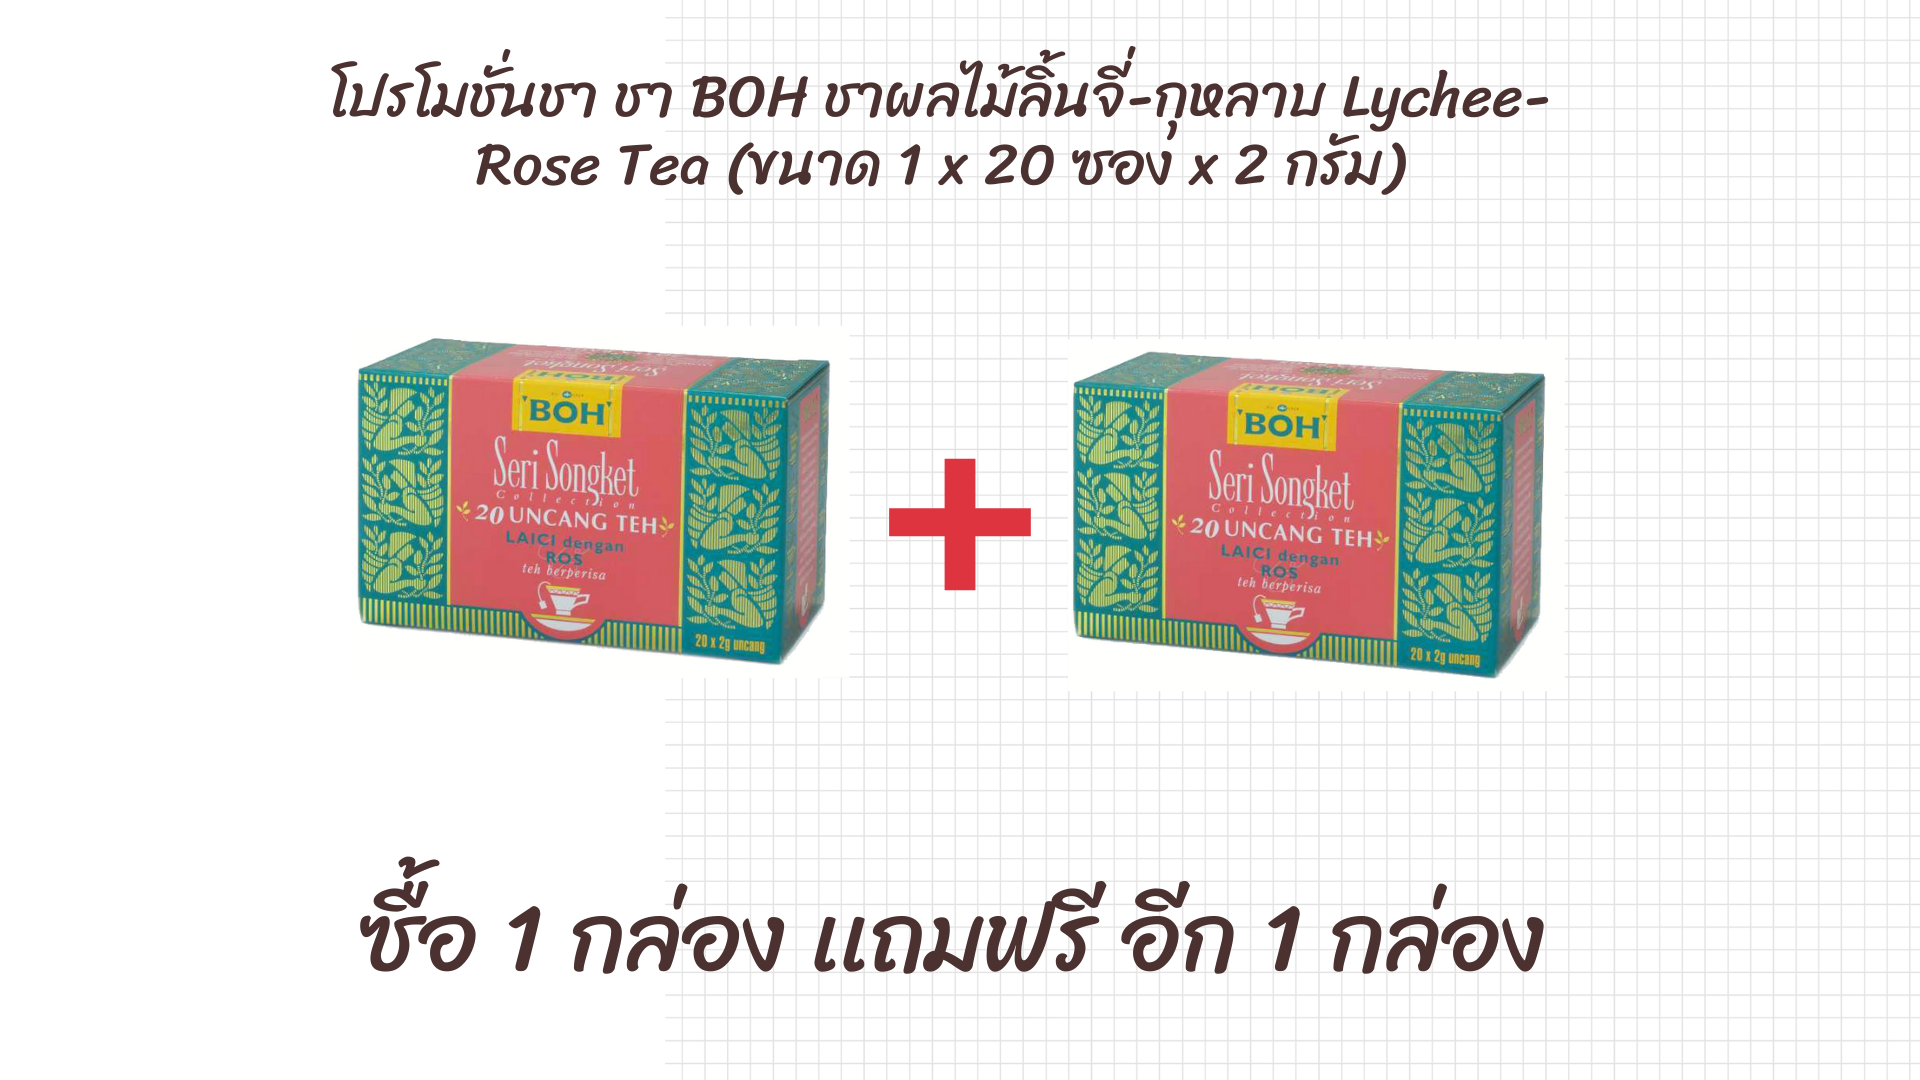 ชา BOH ชาผลไม้ลิ้นจี่-กุหลาบ Lychee-Rose Tea (ขนาด 1 x 20 ซอง x 2 กรัม) วันหมดอายุ EXP 16/11/2022 ซื้อ 1 เเถมฟรีอีก 1 กล่อง